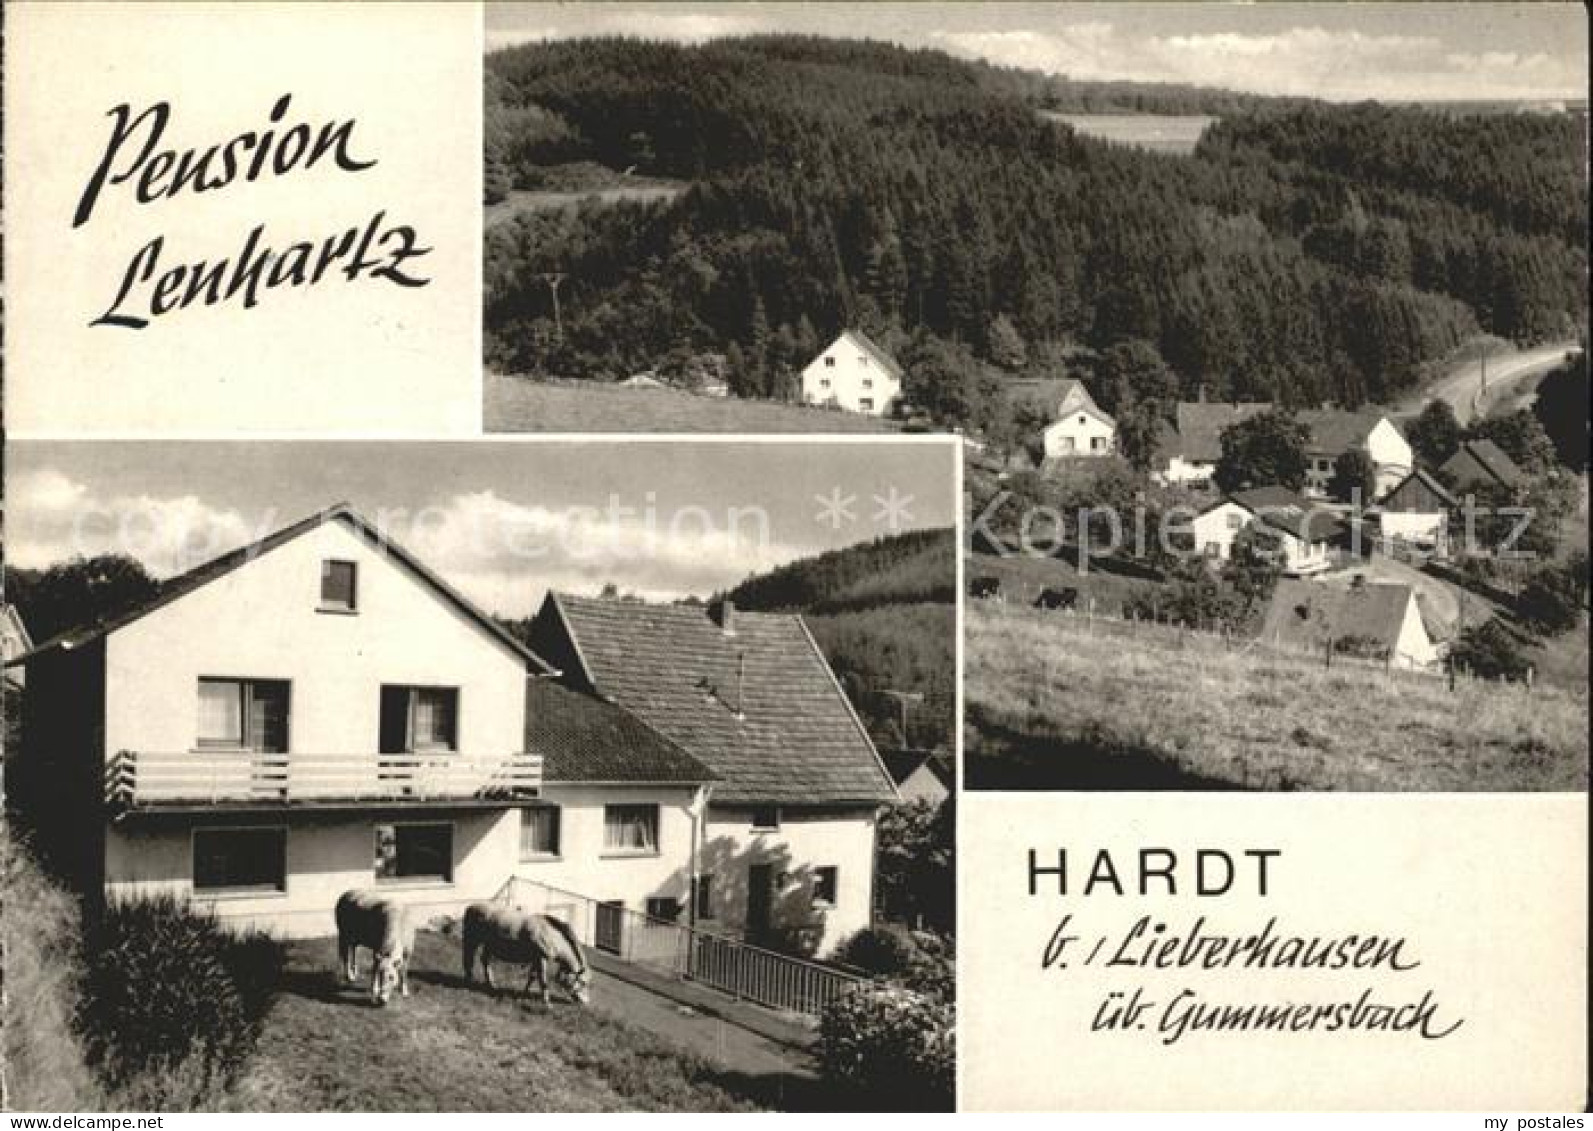 72019078 Hardt Gummersbach Pension Lenhartz Gummersbach - Gummersbach